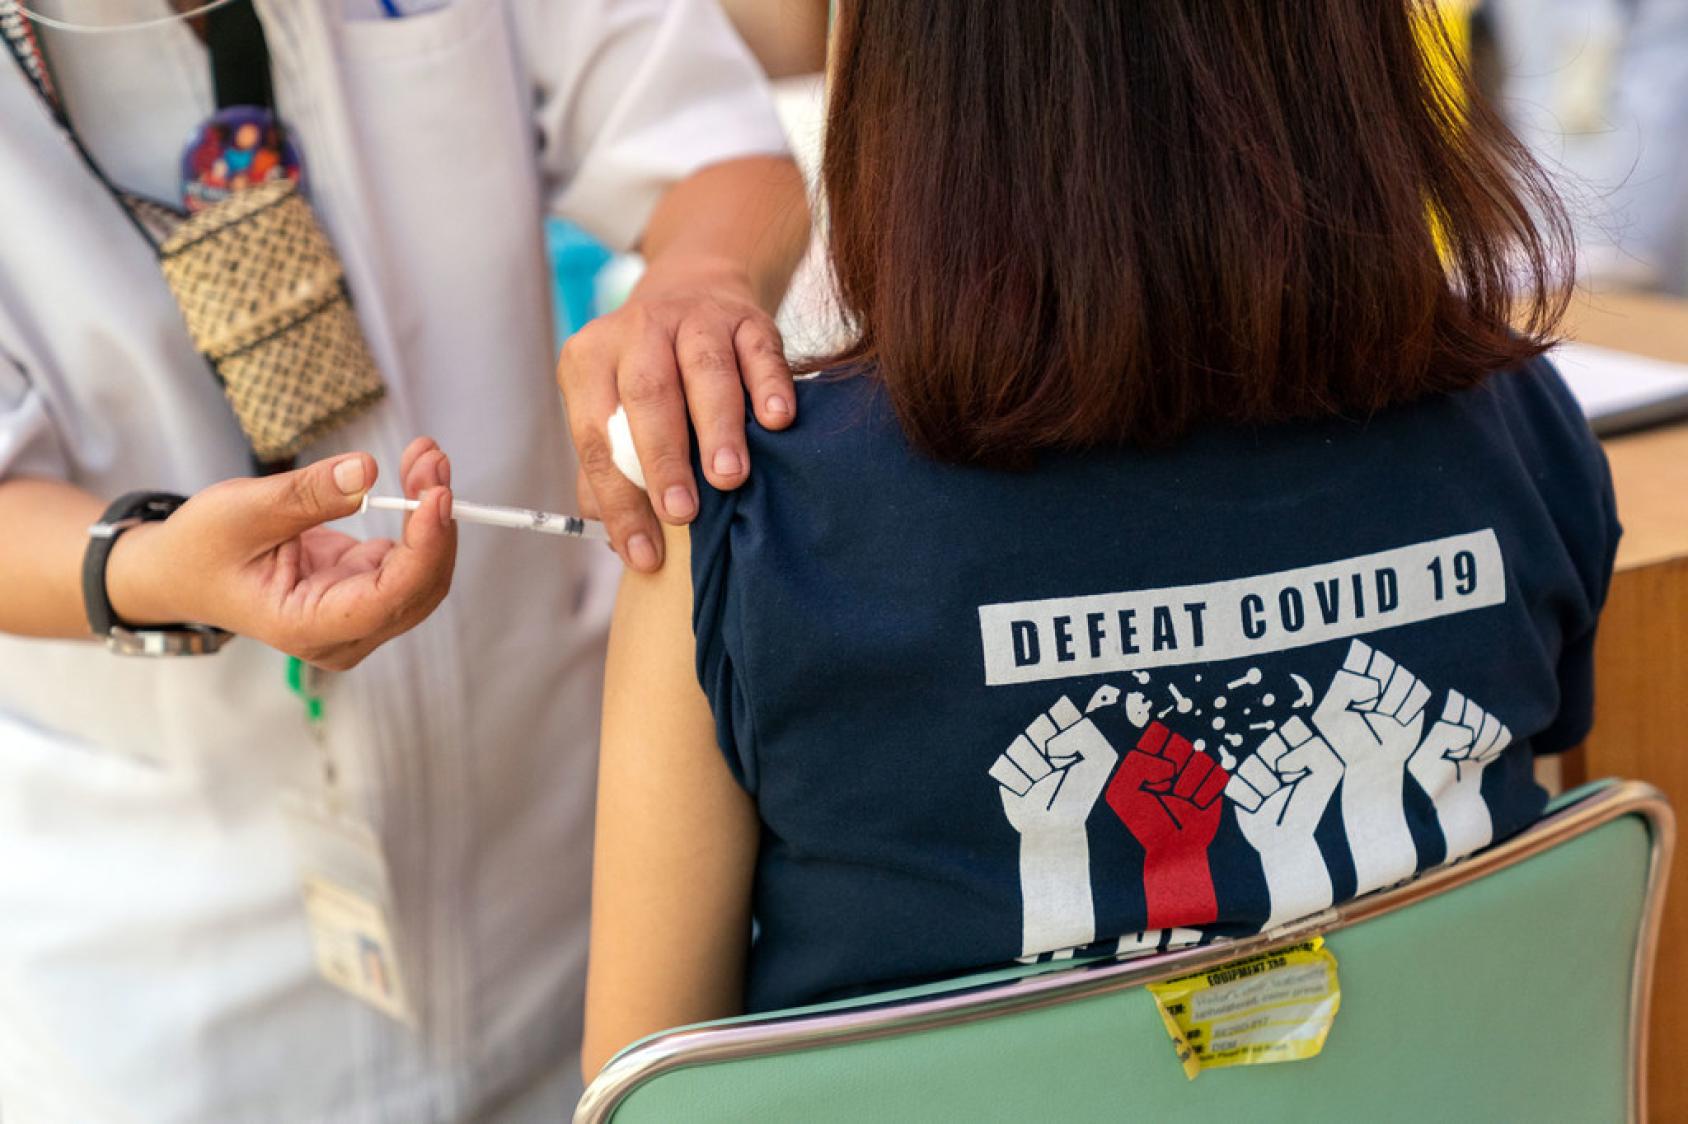 Una chica con una camiseta con el mensaje "Derrotar el COVID-19" en inglés, recibe la vacuna contra el COVID-19.